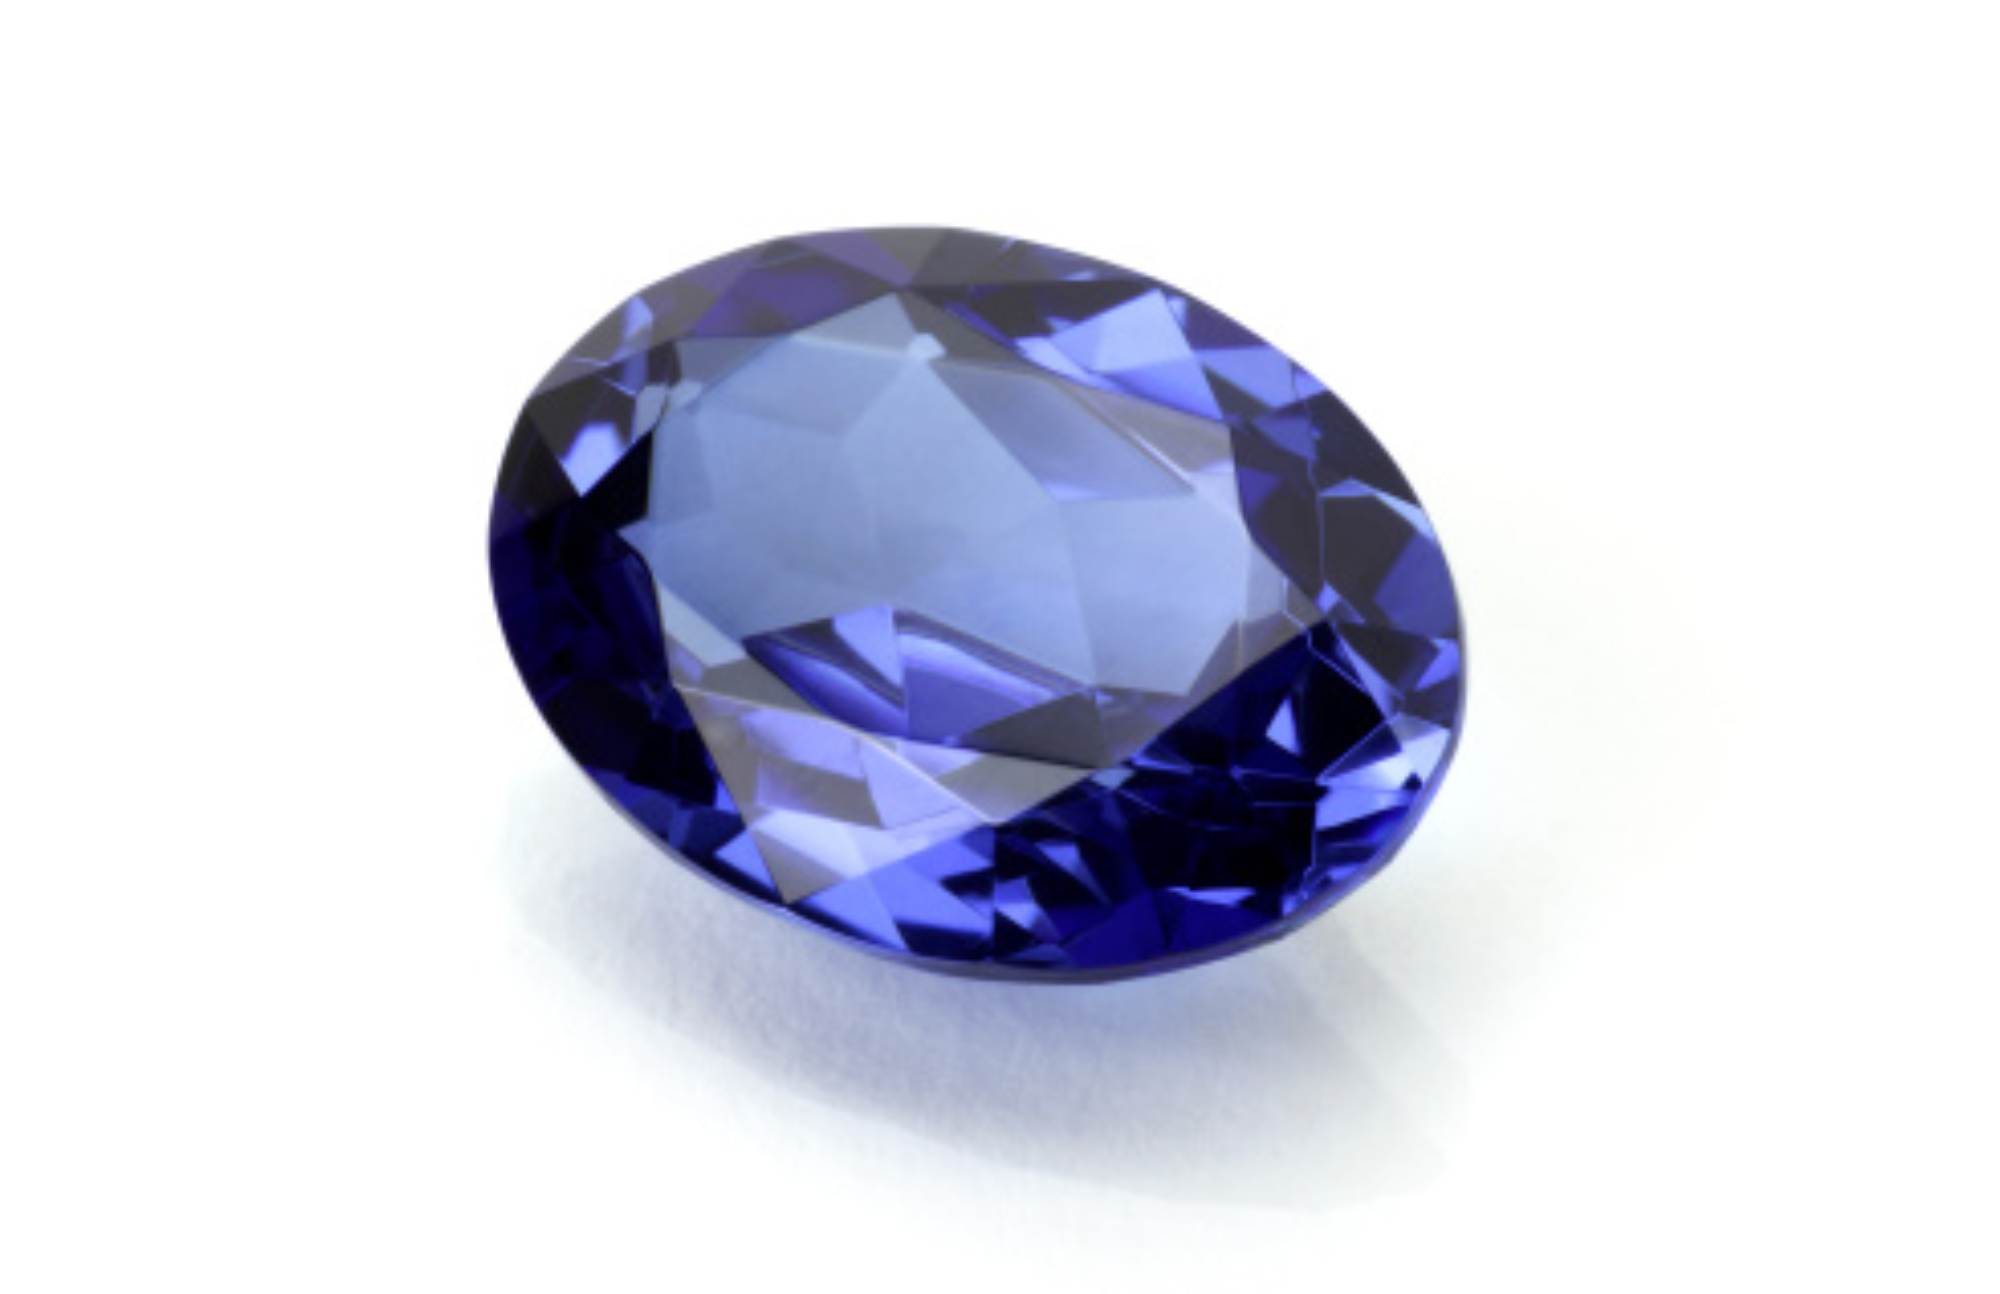 Oblong blue sapphire